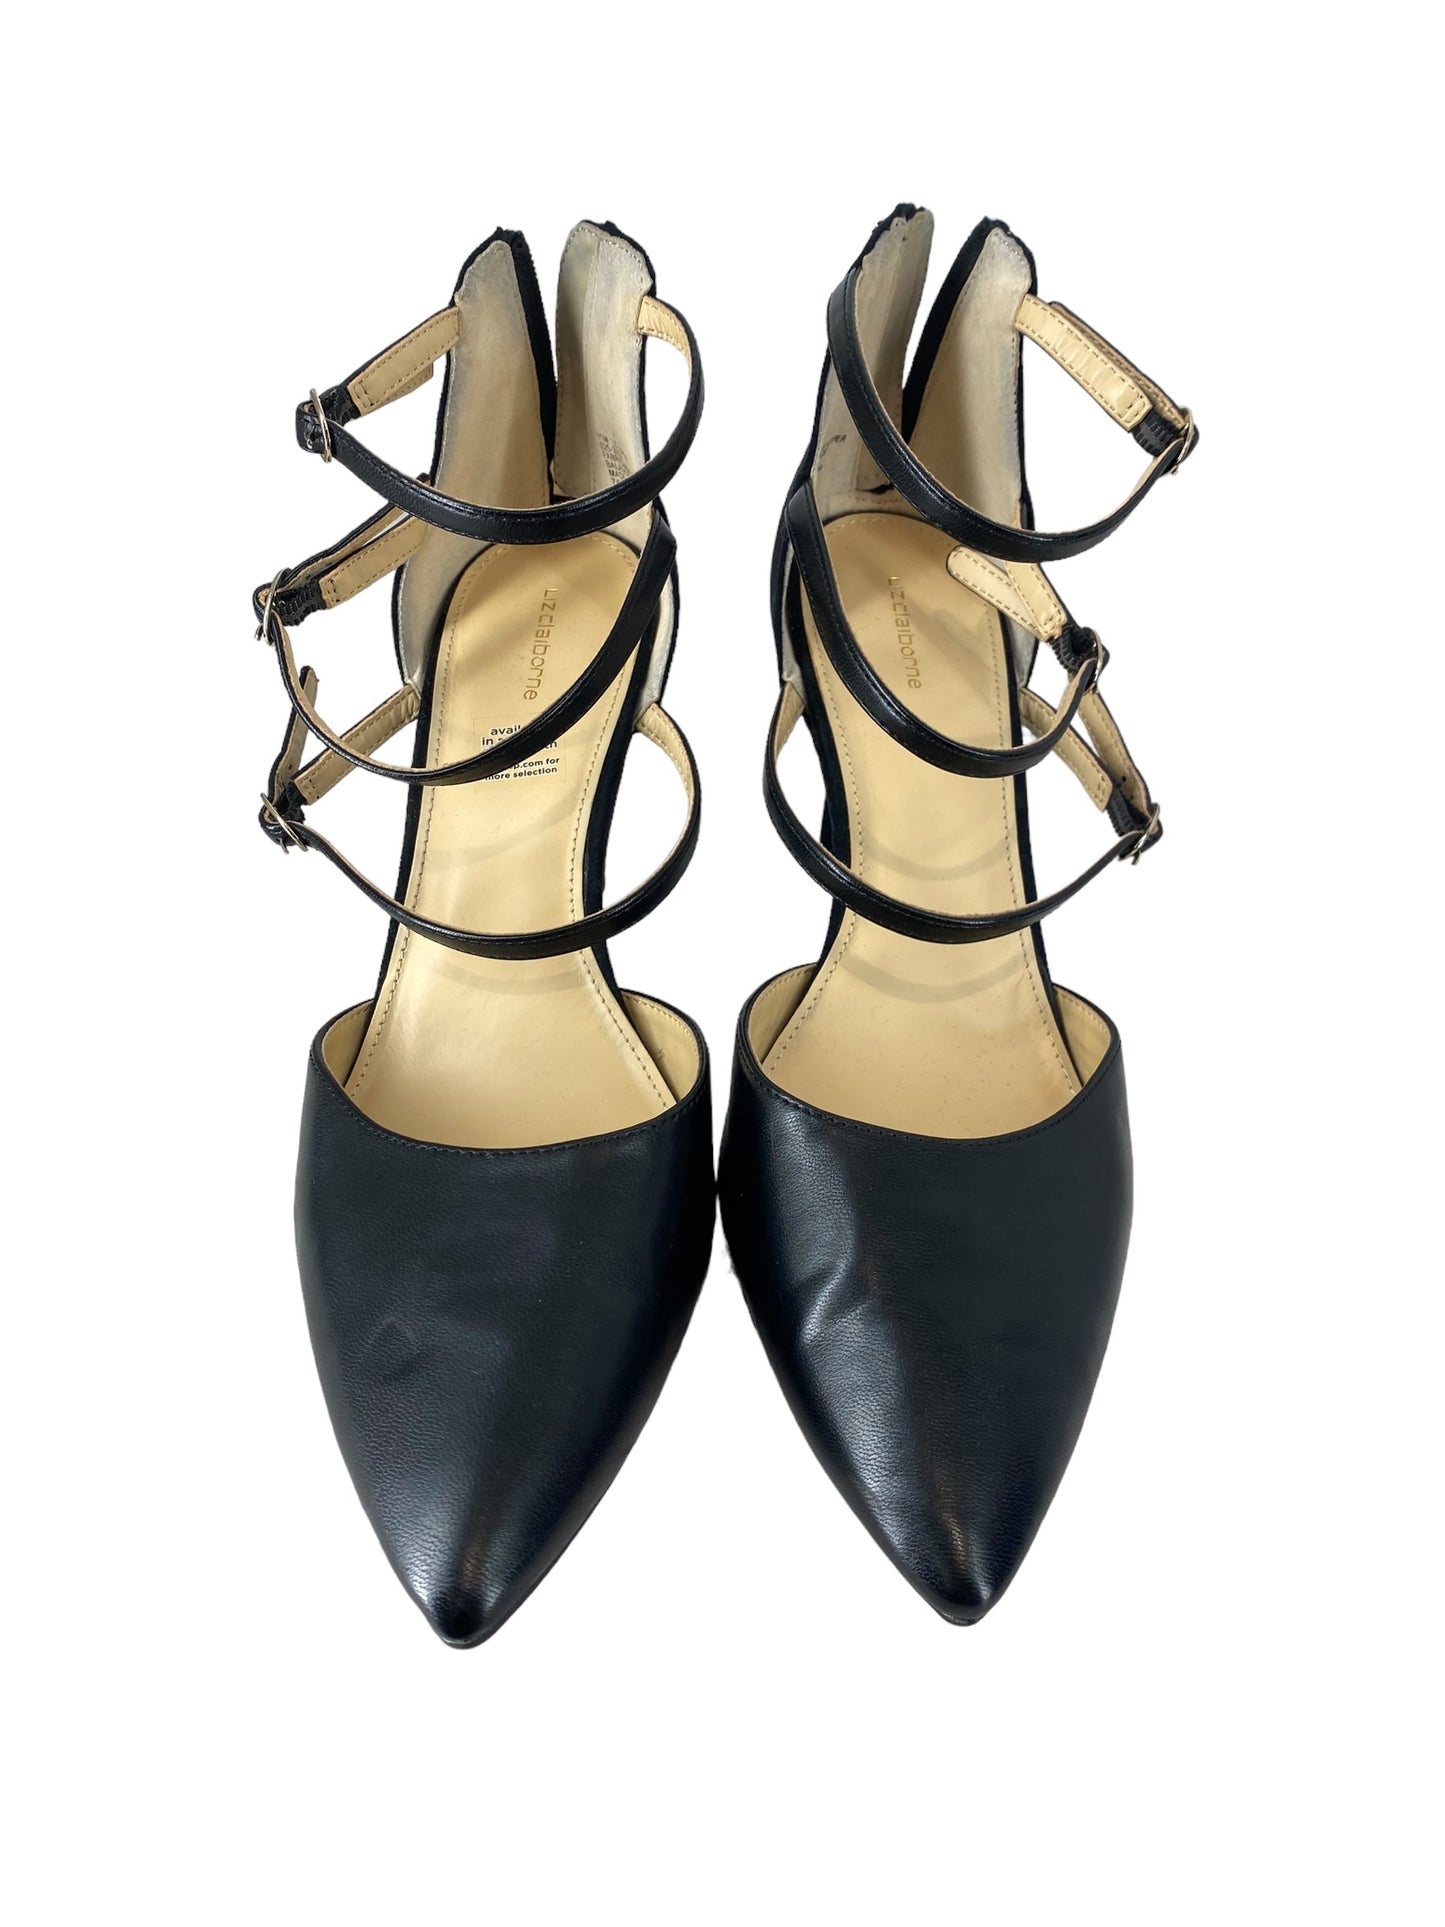 Black Shoes Heels Stiletto Liz Claiborne, Size 11